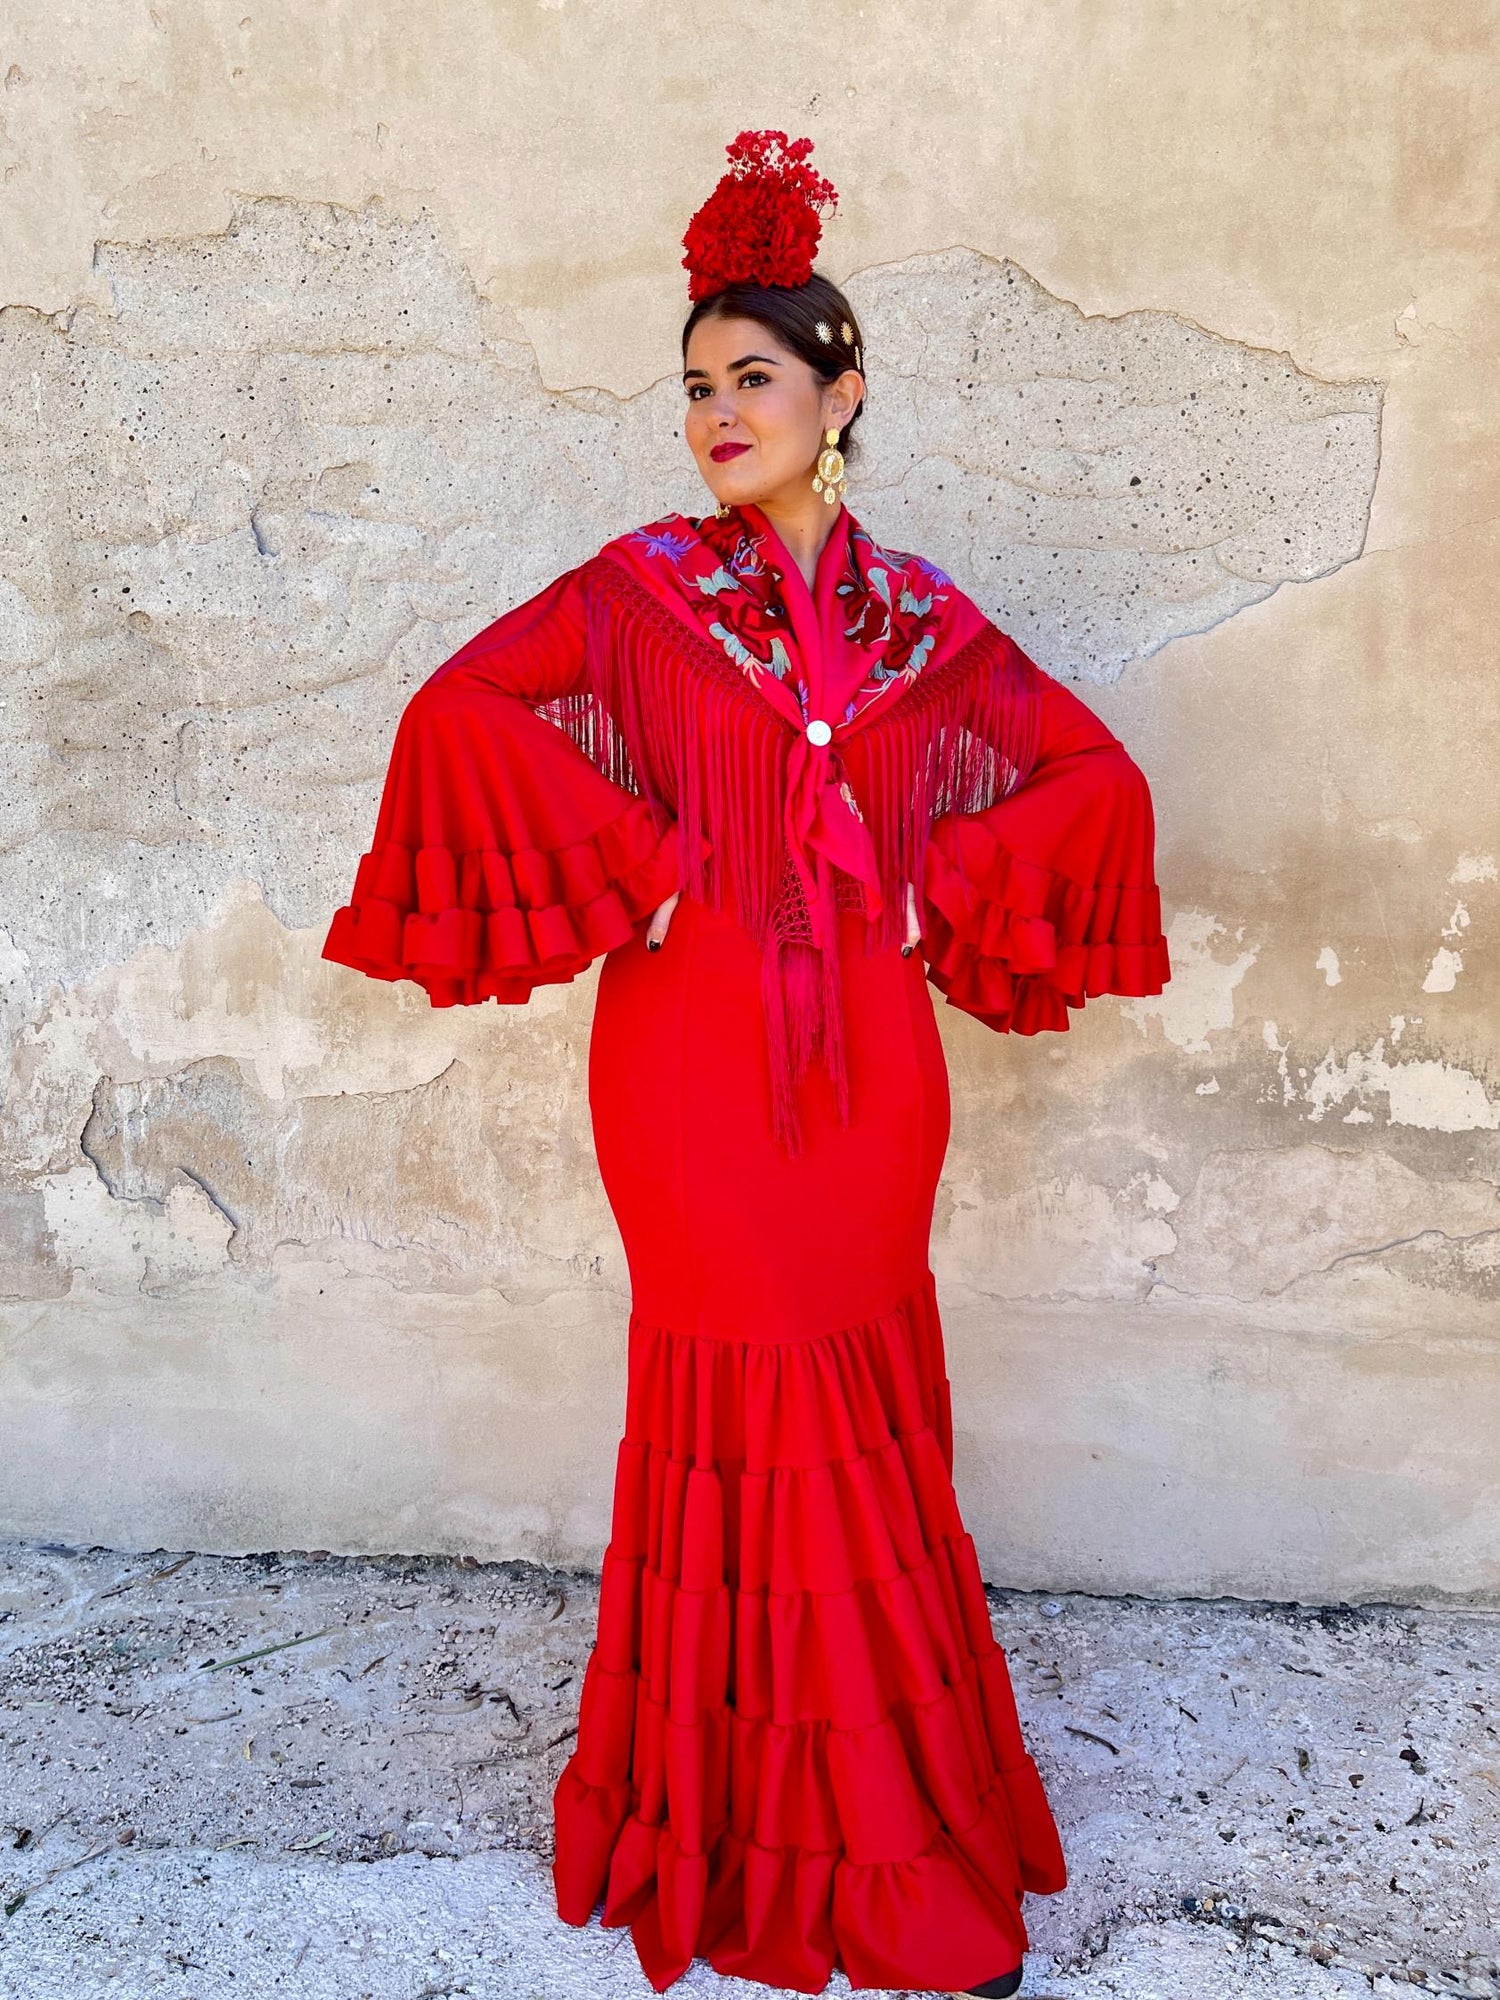 Compra Online los Mejores Trajes de Flamenca